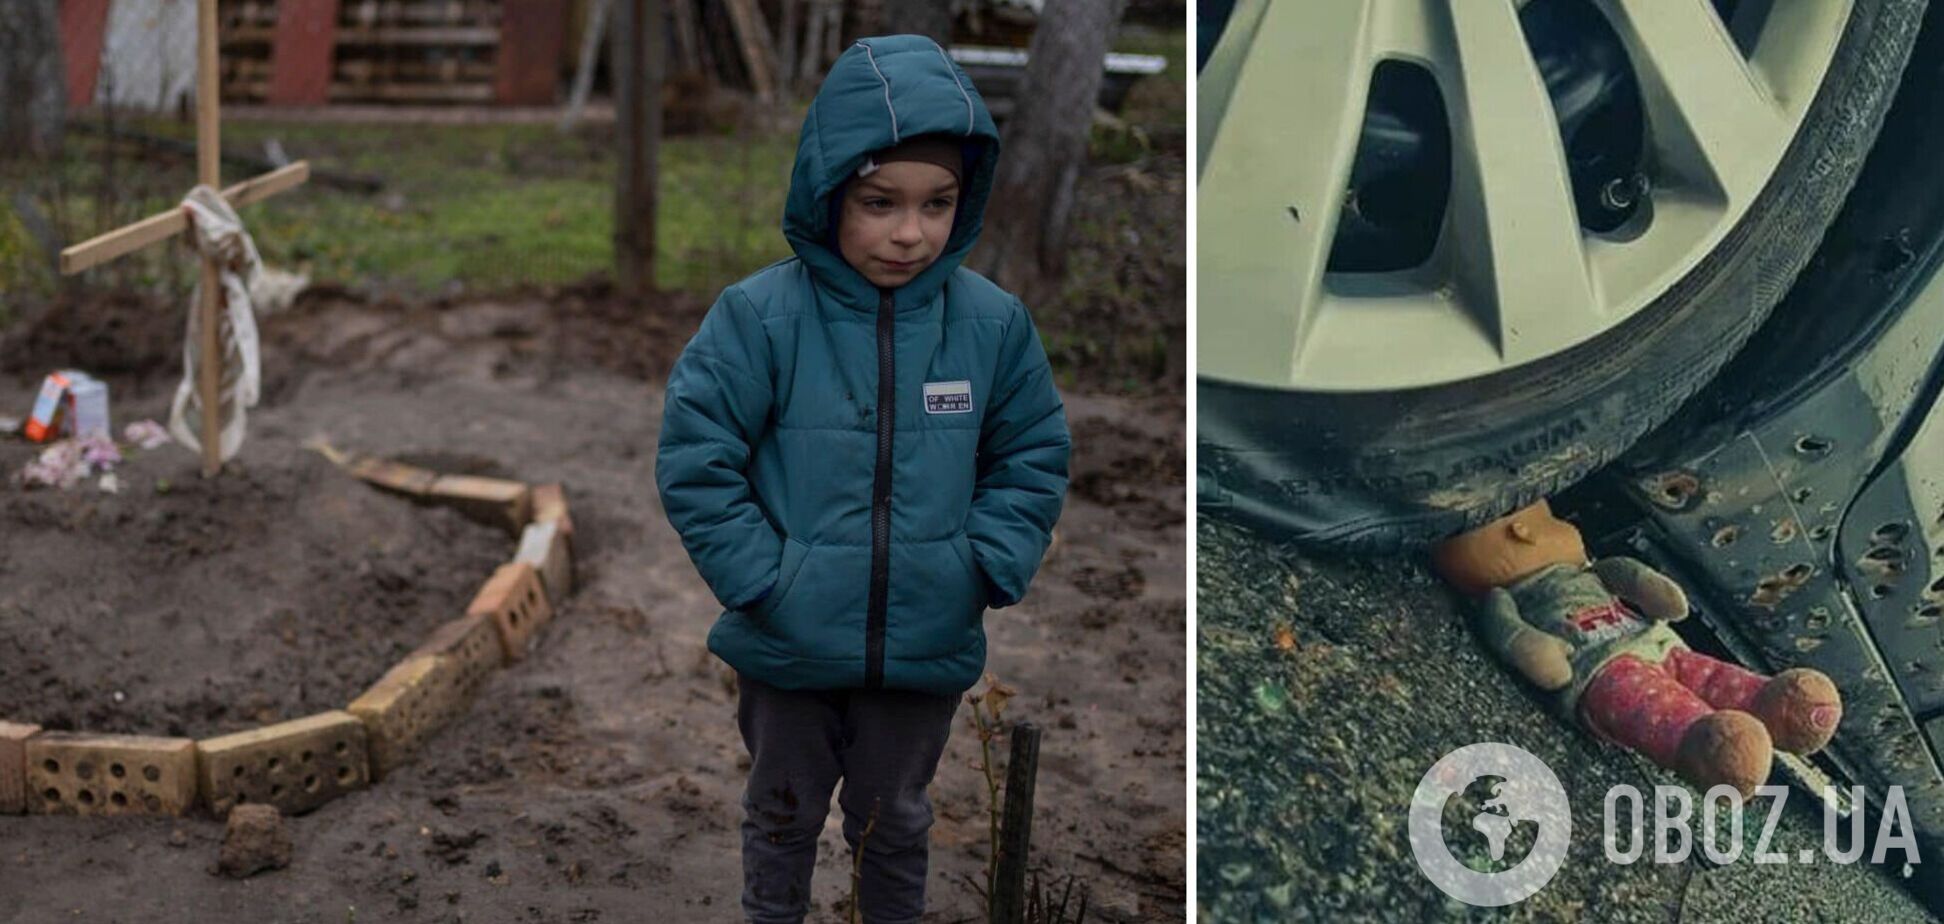 'Як може існувати таке зло?' Фото дитини біля могили матері на Київщині сколихнуло мережу